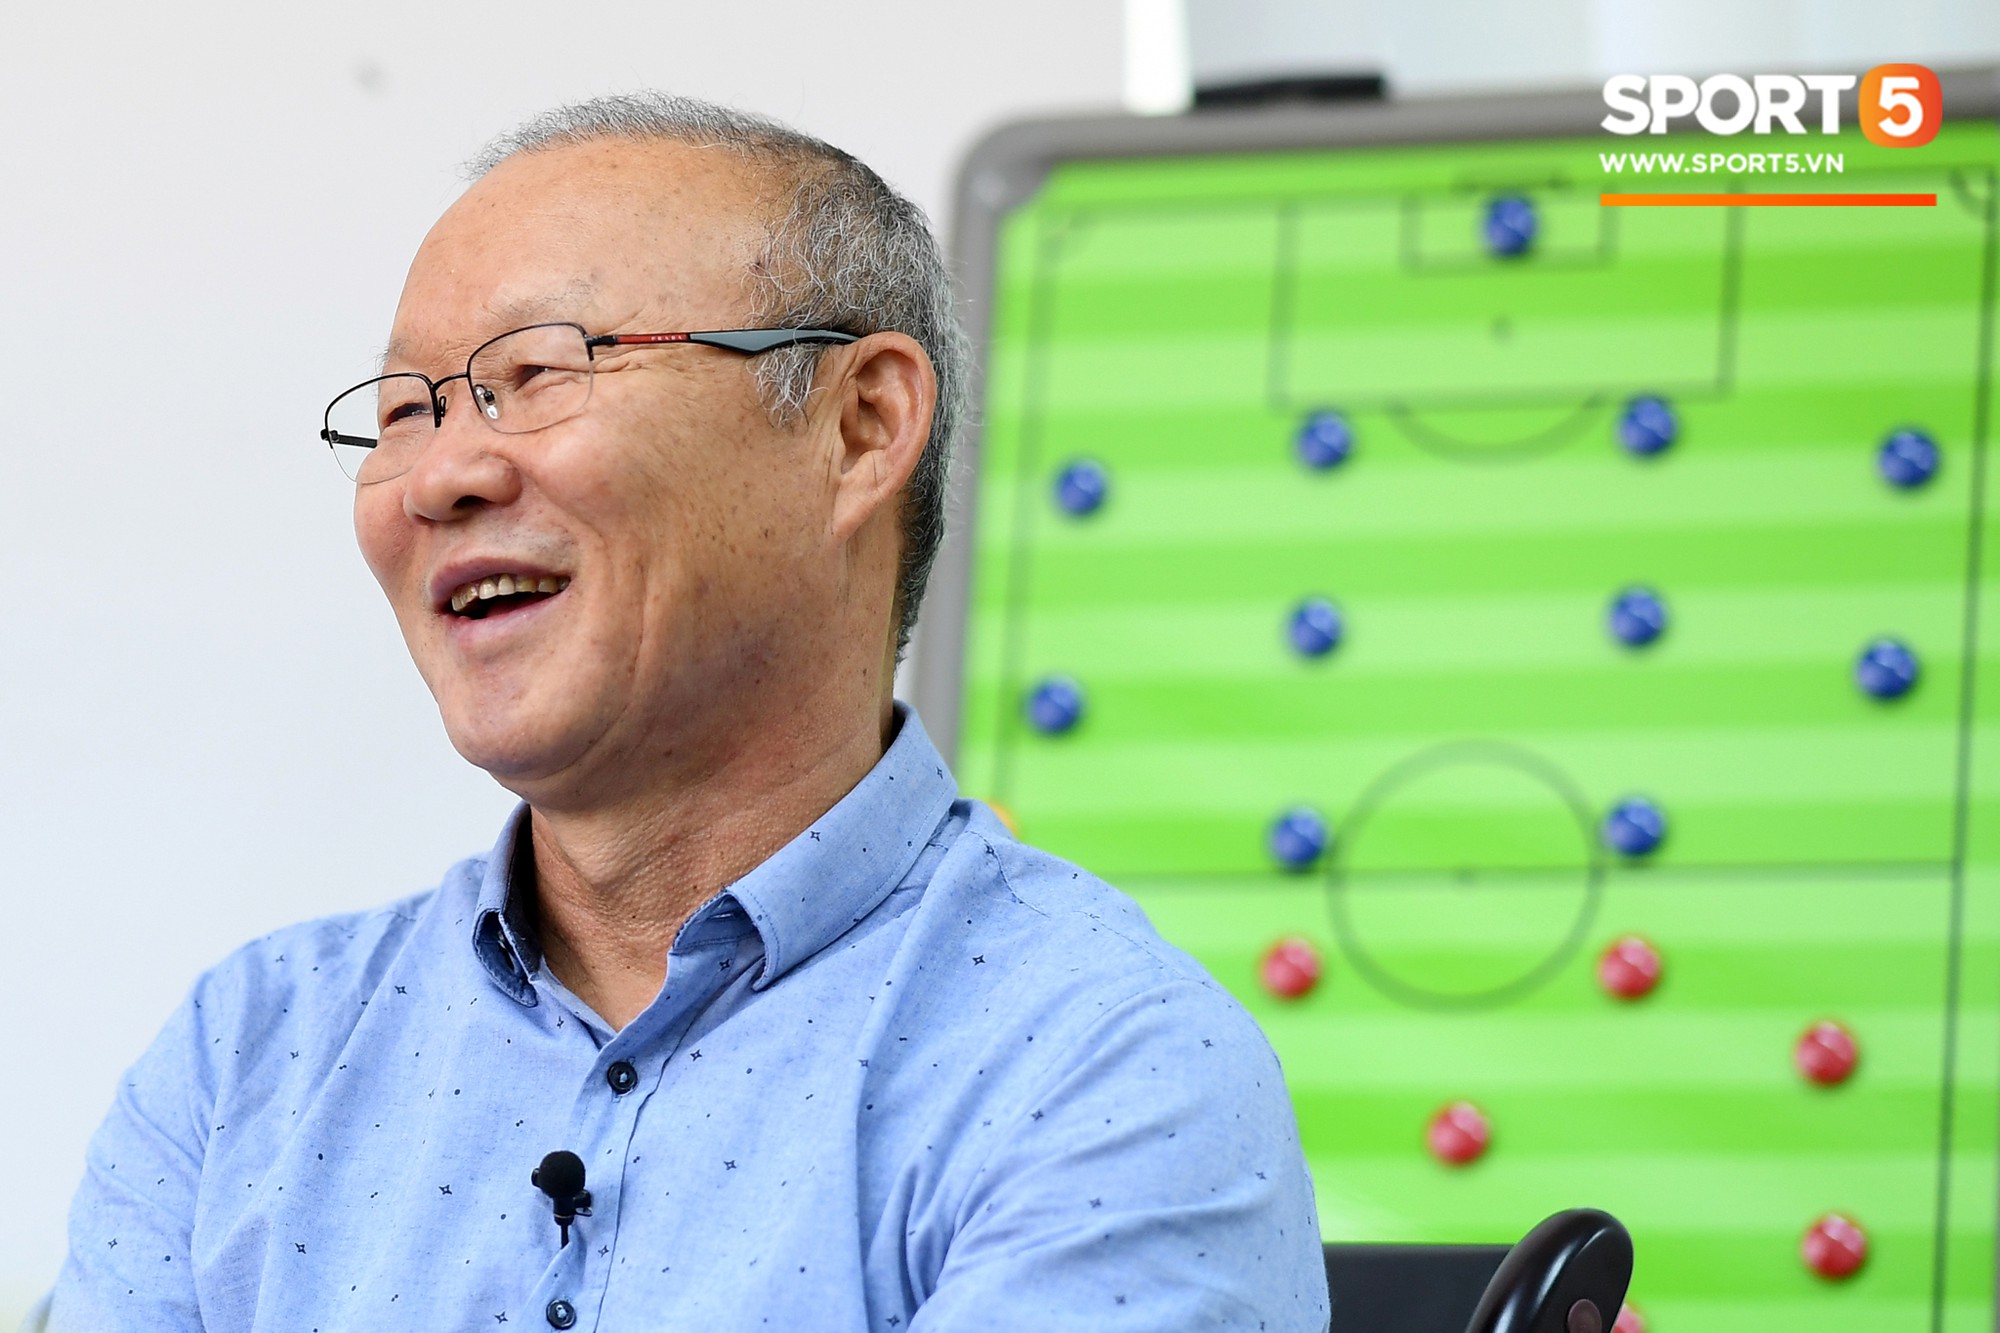 HLV Park Hang-seo: “Liệu Việt Nam đã sẵn sàng chinh phục mục tiêu World Cup” - Ảnh 2.